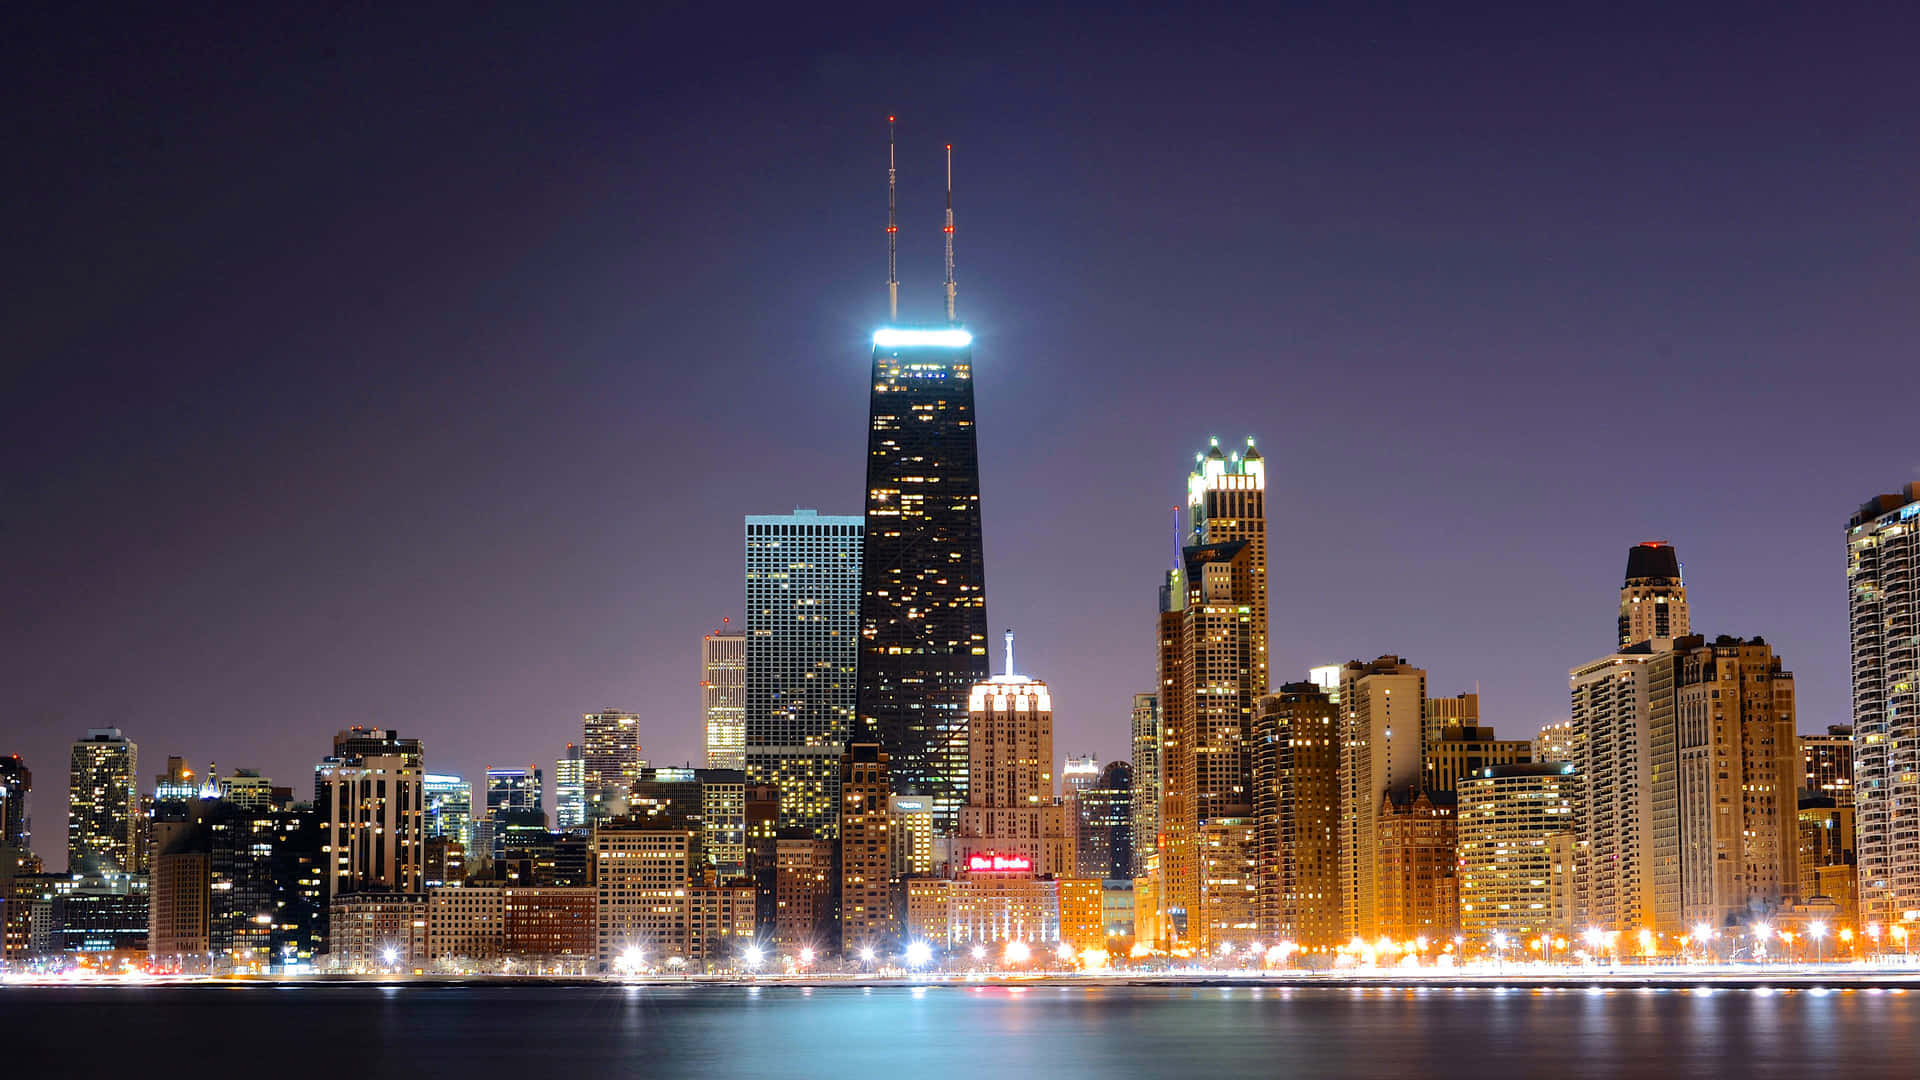 Tag det fantastiske vue af Downtown Chicago fra denne 4k Ultra HD Wallpaper. Wallpaper